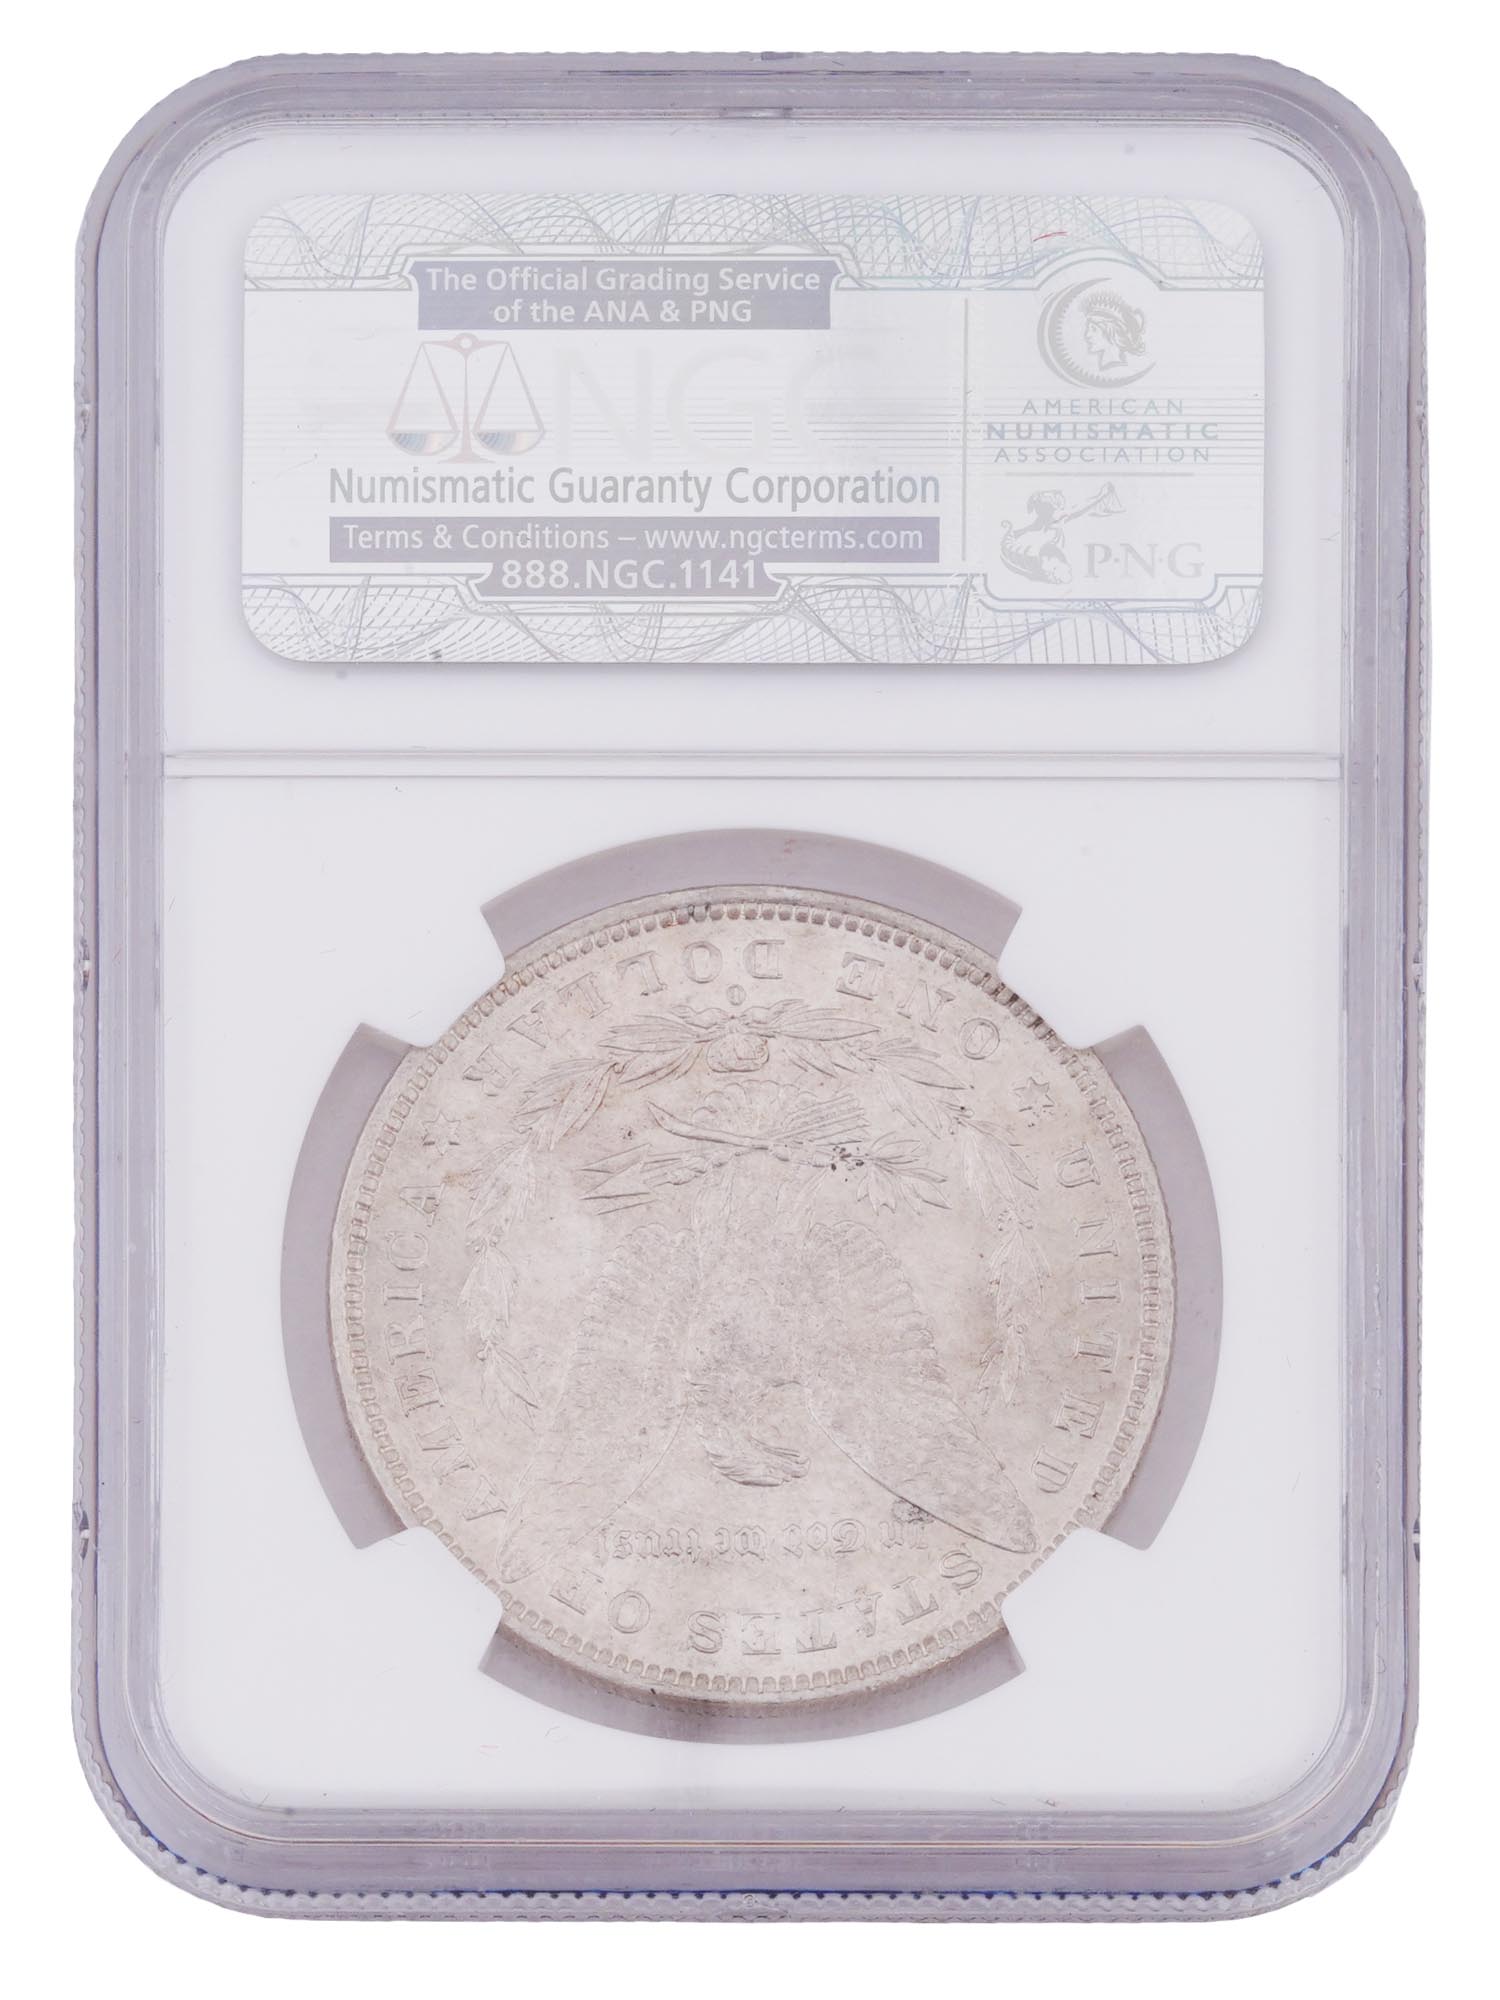 ANTIQUE 1881 AMERICAN MORGAN SILVER DOLLAR COIN PIC-1